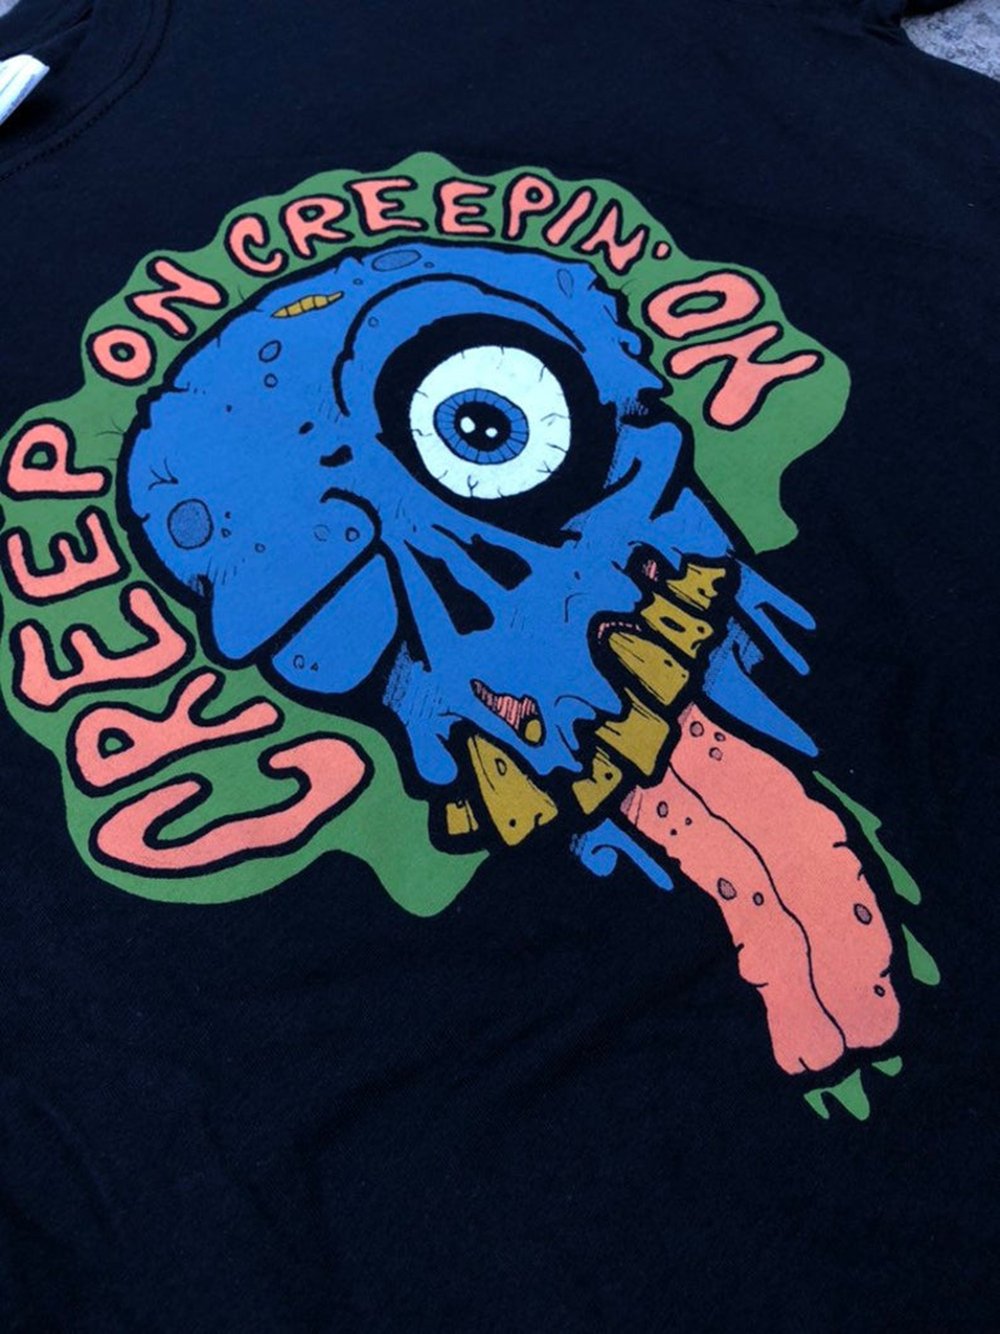 CREEP ON CREEPIN' ON Rotting Zombie Horror T-Shirt